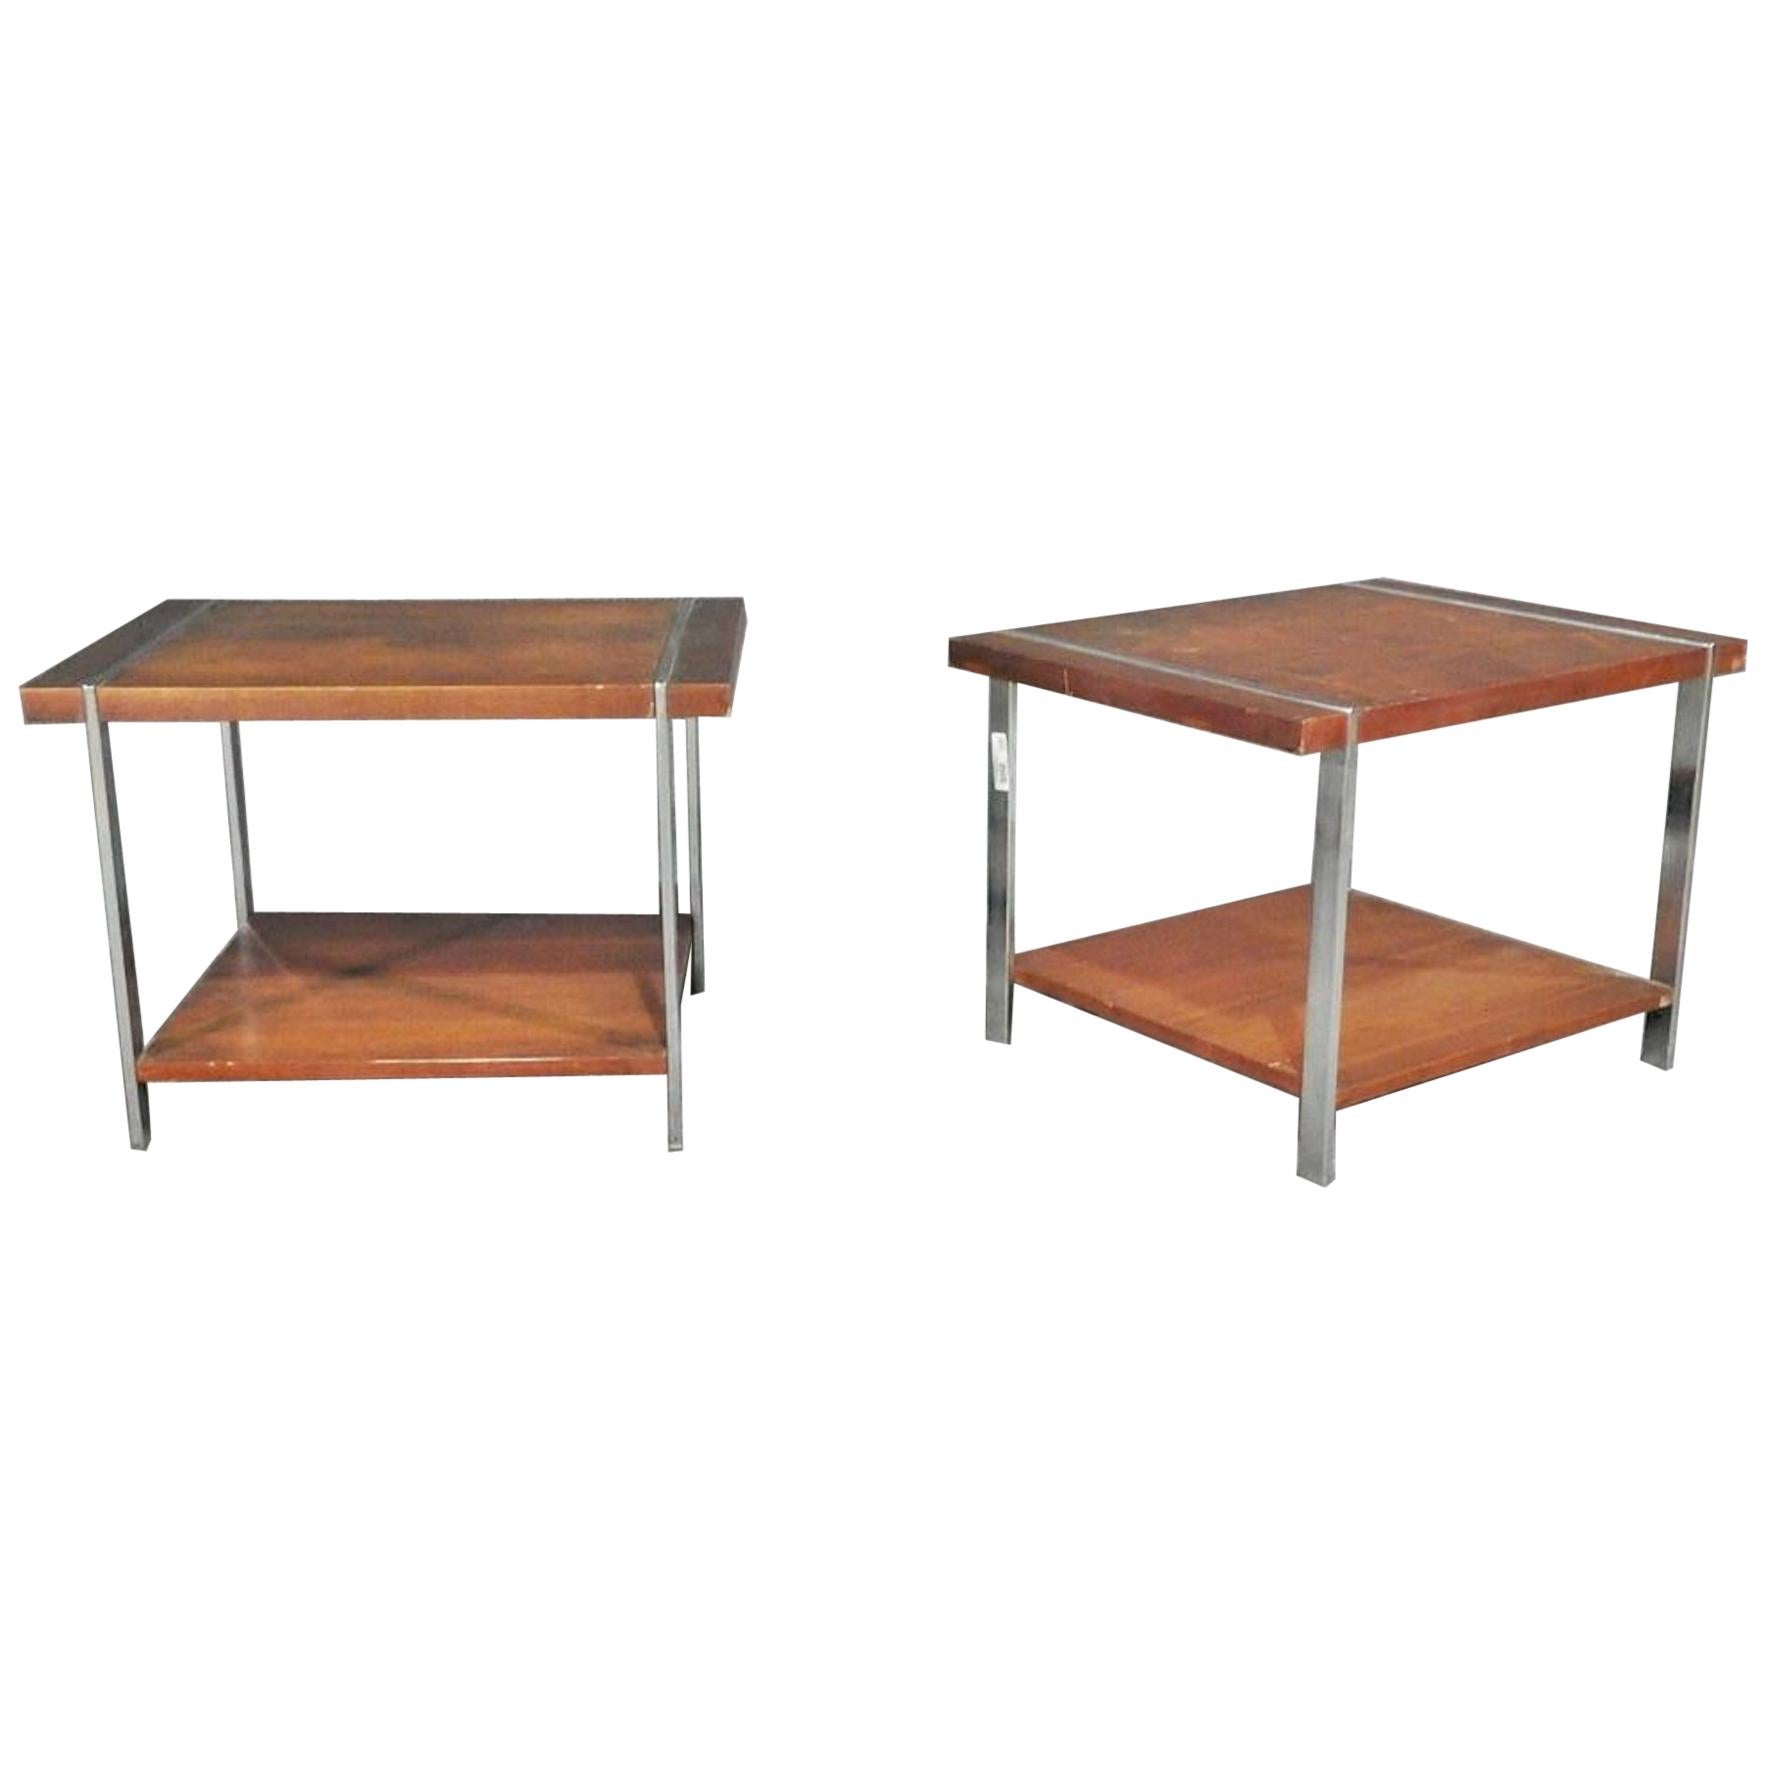 Tische mit Chromgestell aus Nussbaumholz und unterer Ablage, entworfen von Lane.
(Bitte bestätigen Sie den Standort des Artikels - NY oder NJ - mit dem Händler).
  